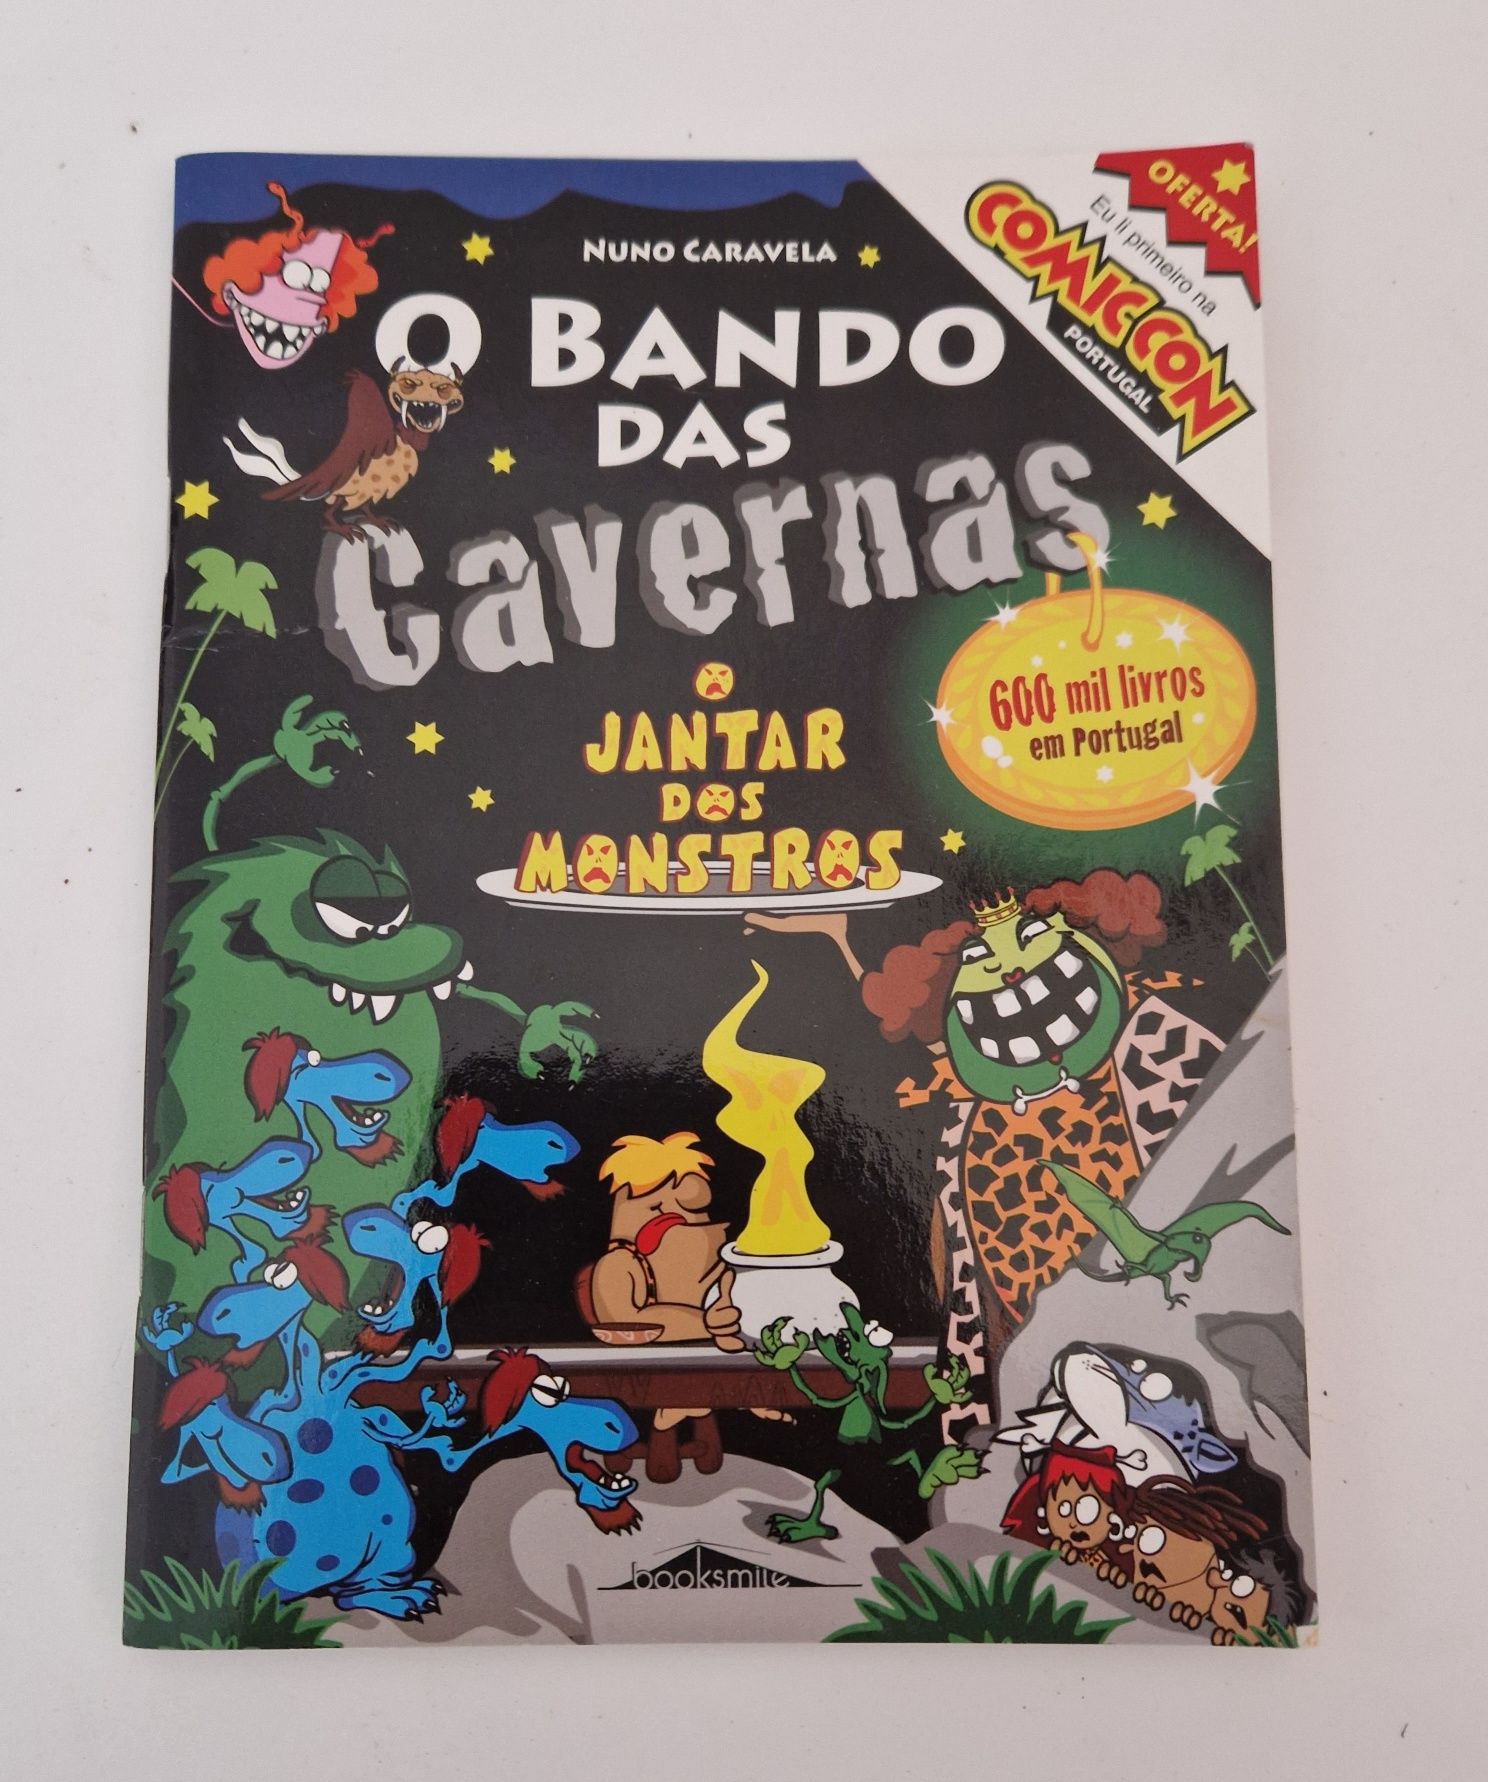 ComicCon Portugal 2019 - BD Bando das Cavernas